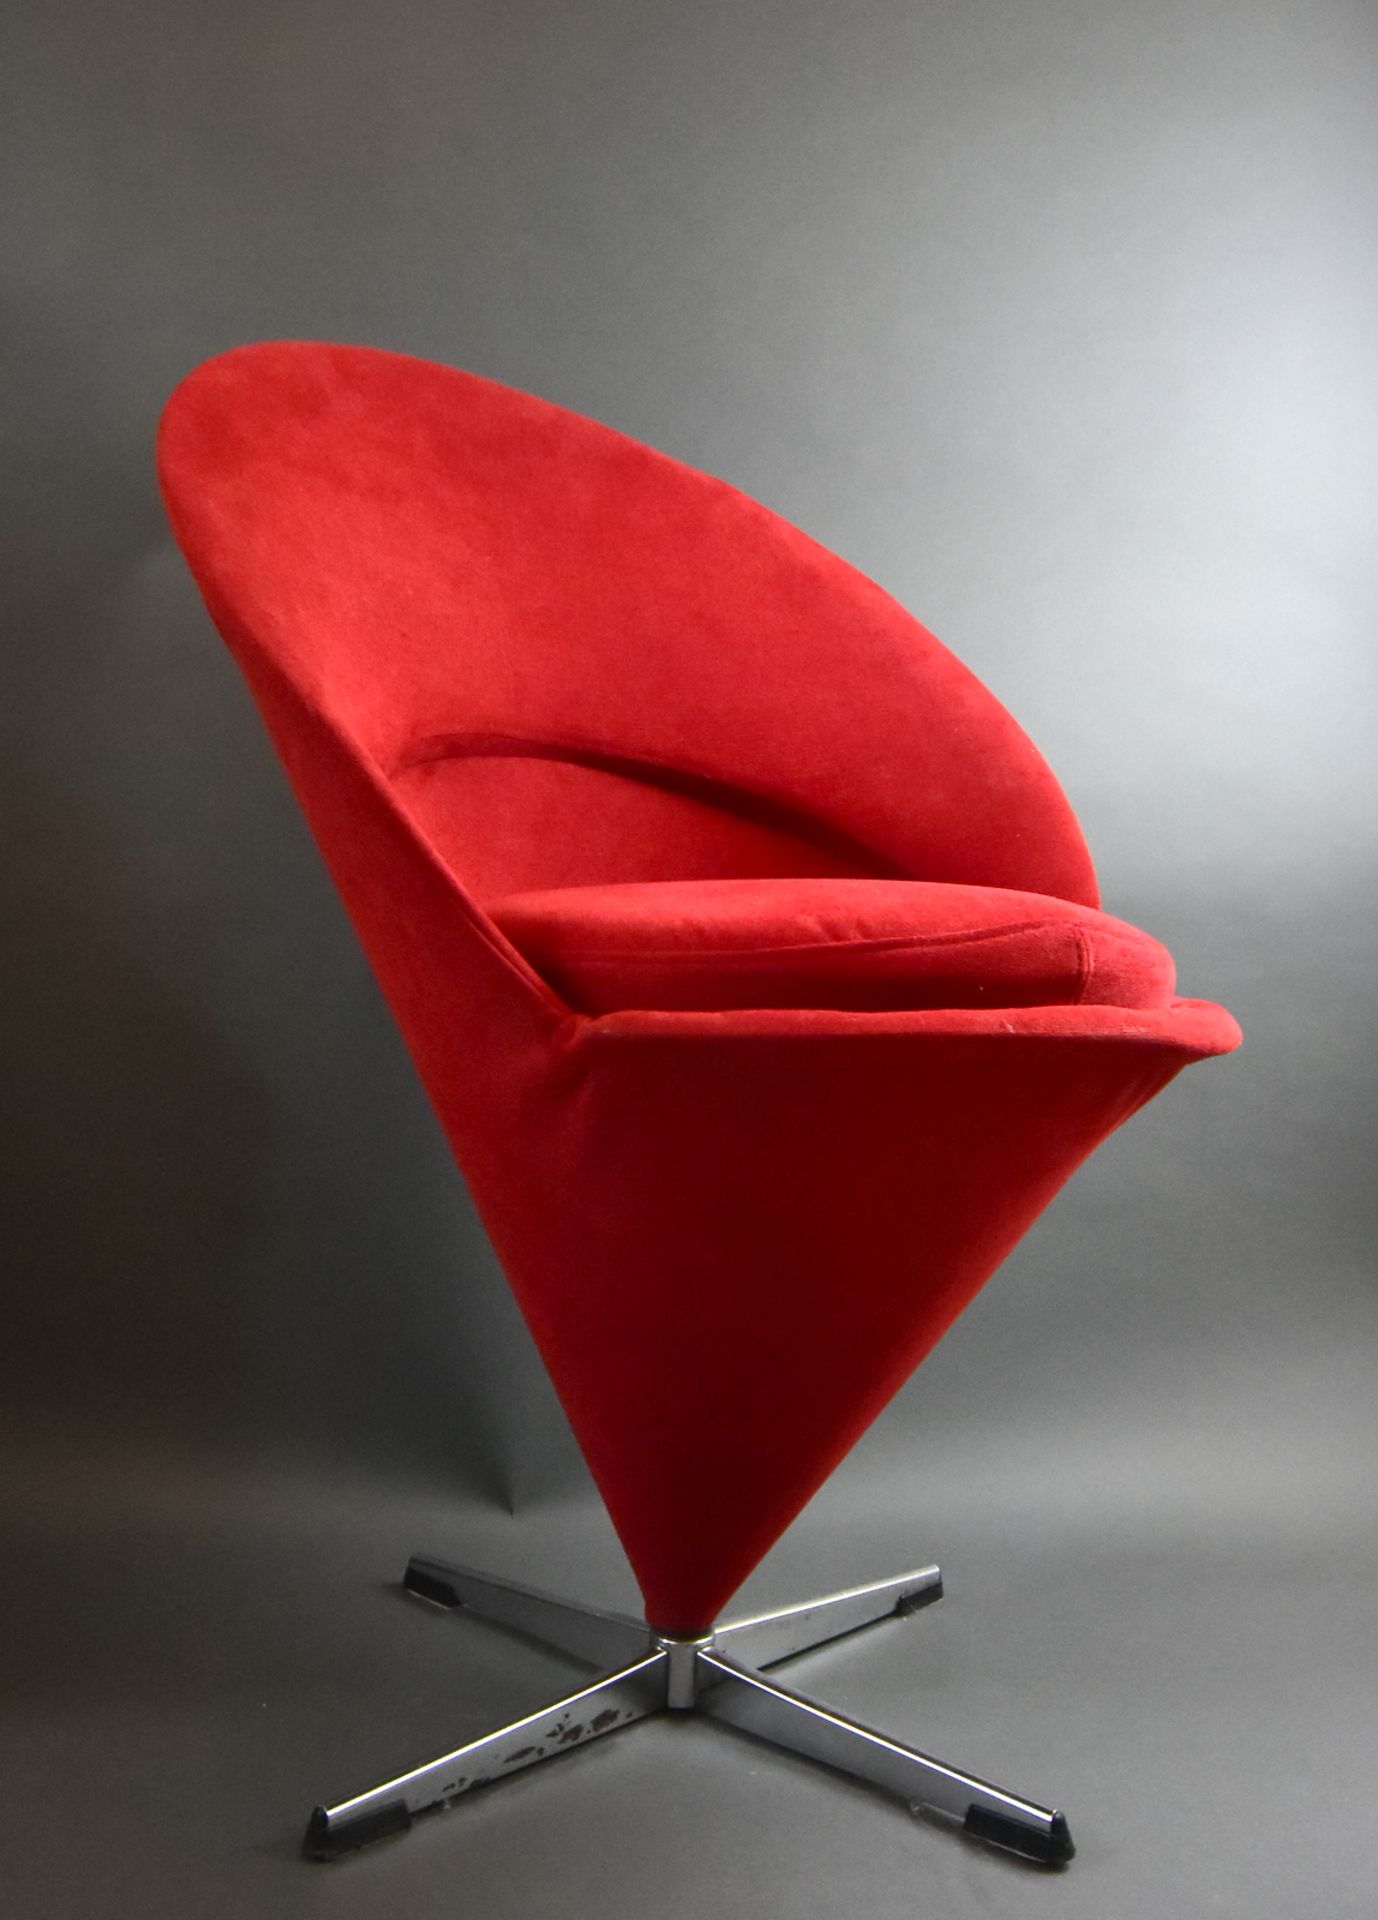 Verner Panton "Cone" Sessel, Dänisches Design, Entwurf 1958